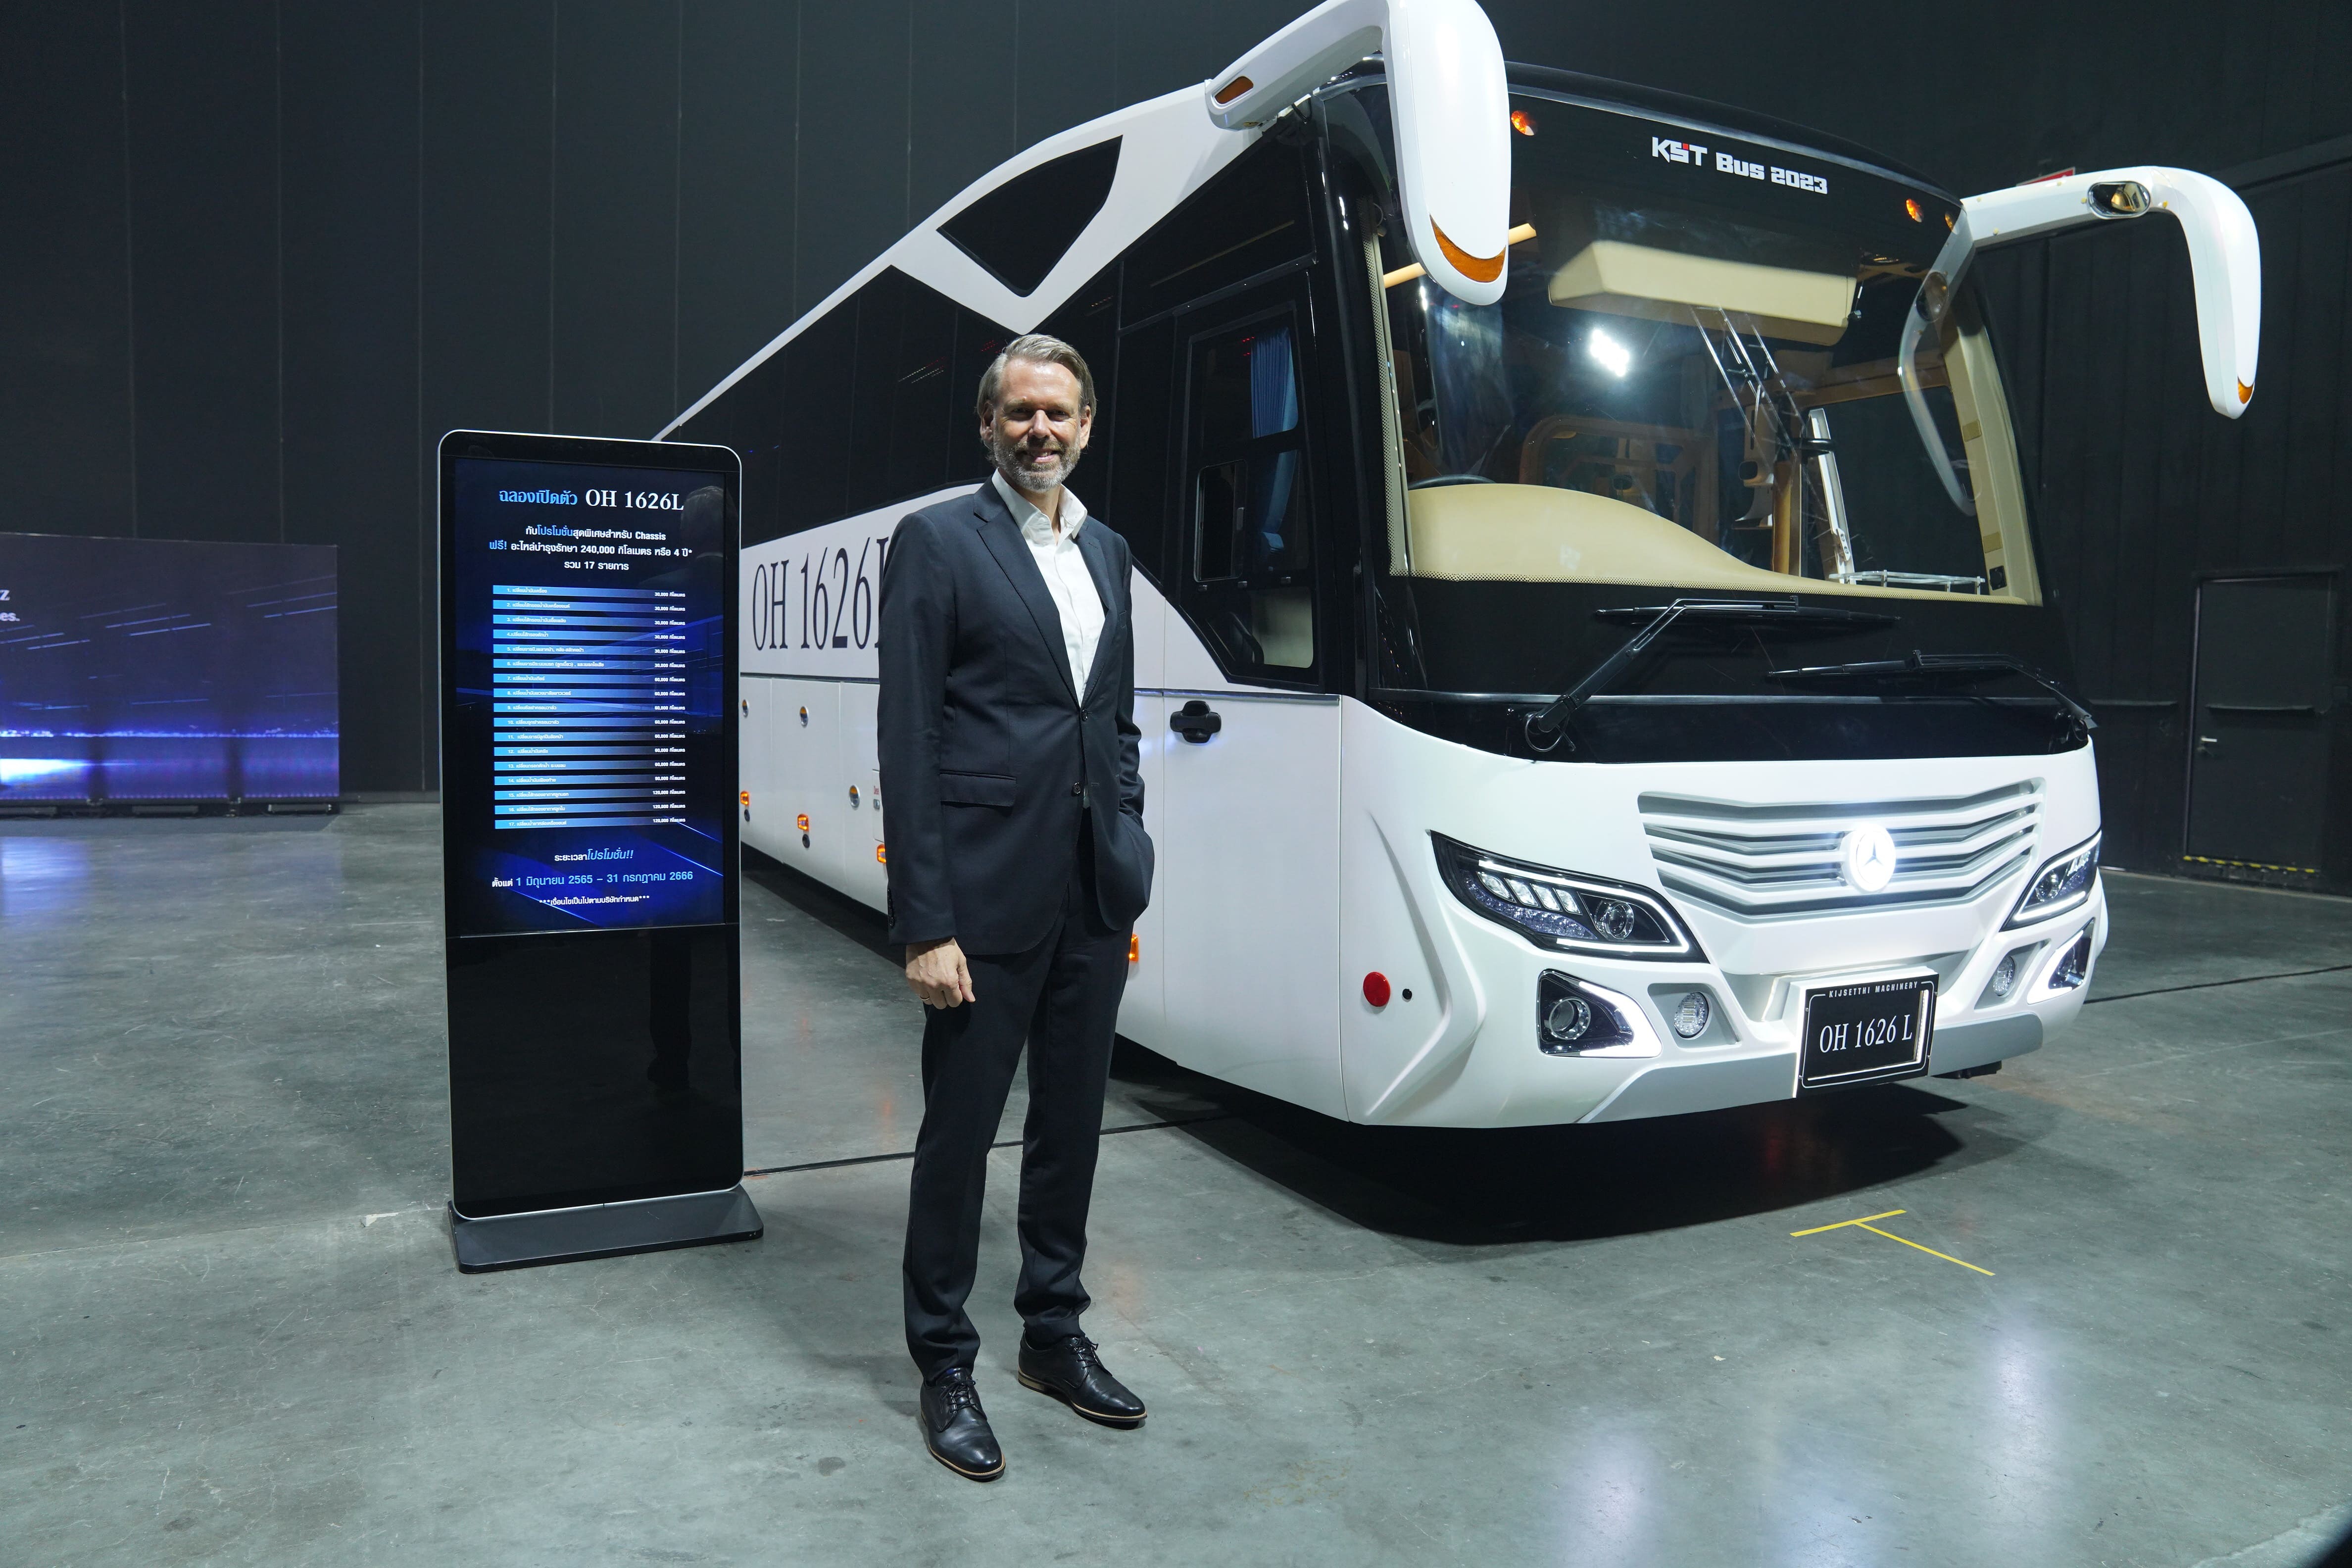 เดมเลอร์ คอมเมอร์เชียล วีฮีเคิลส์ (ประเทศไทย) เขย่าตลาดรถบัส ส่ง Mercedes-Benz Bus รุ่นใหม่ หนุนผู้ประกอบการขนส่ง และท่องเที่ยวเต็มสูบ